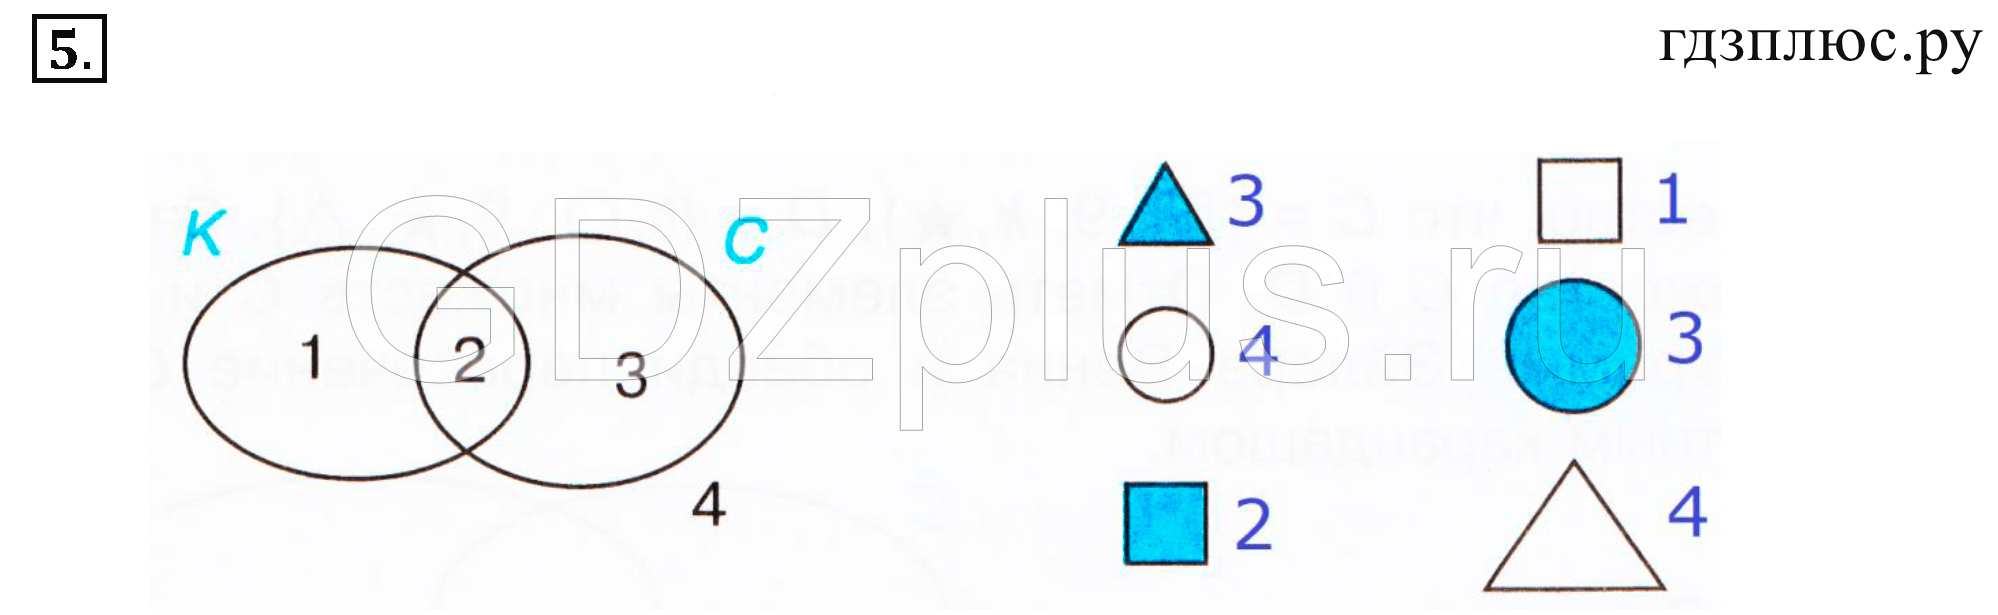 Петерсон 3 класс урок 9 ответы. Математика Петерсон какую из этих фигур можно нарисовать. Математика Петерсон какую из этих фигур можно нарисовать страница 73. Учебник по математике Петерсон какую из этих фигур можно нарисовать.